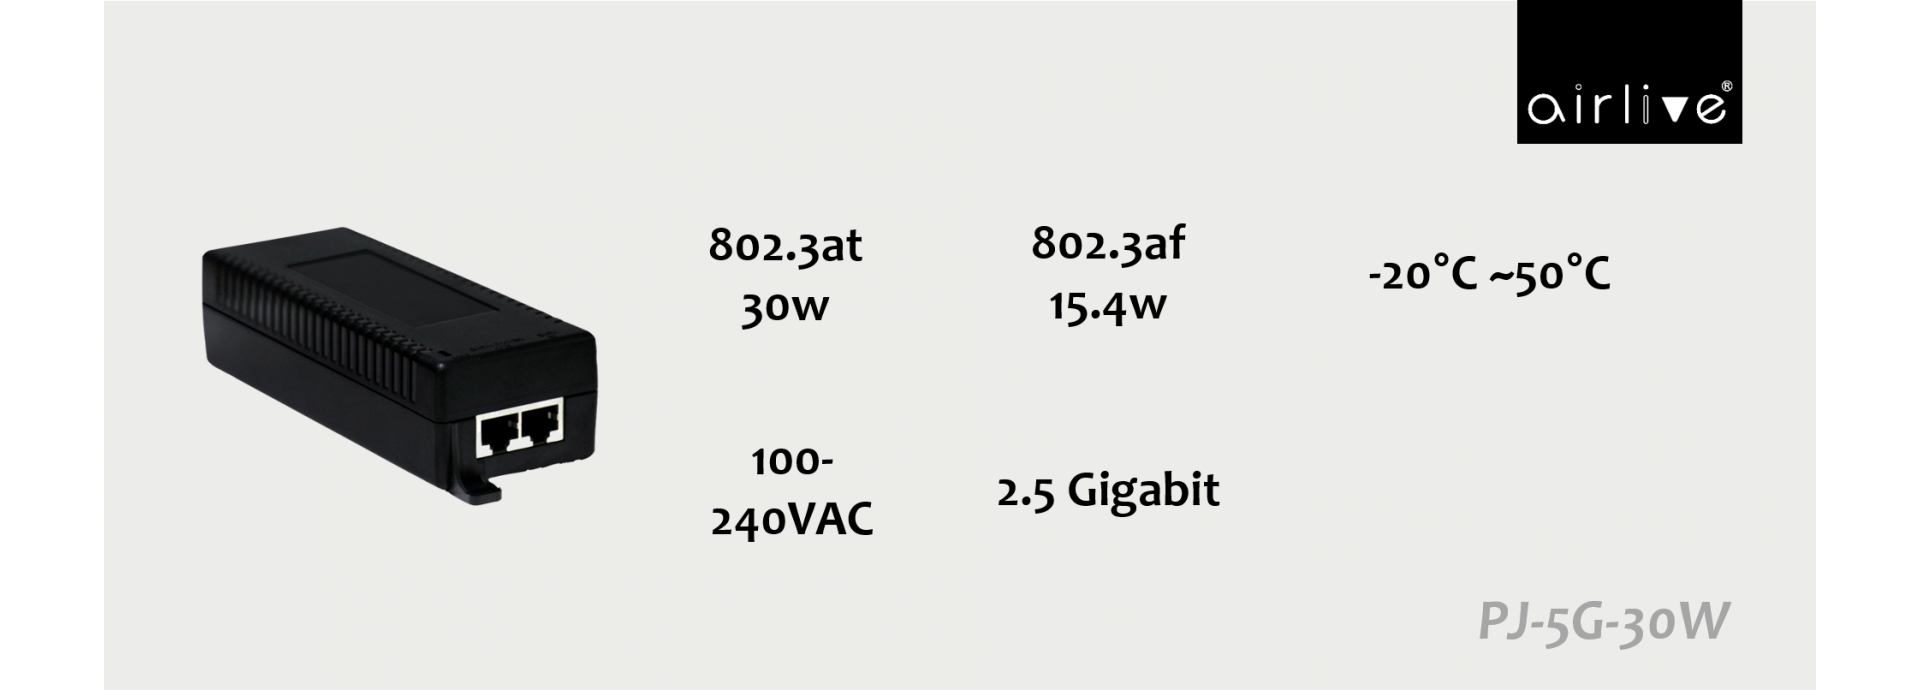 Gigabit PoE Injector  Industrial 5G Cellular Router Manufacturer